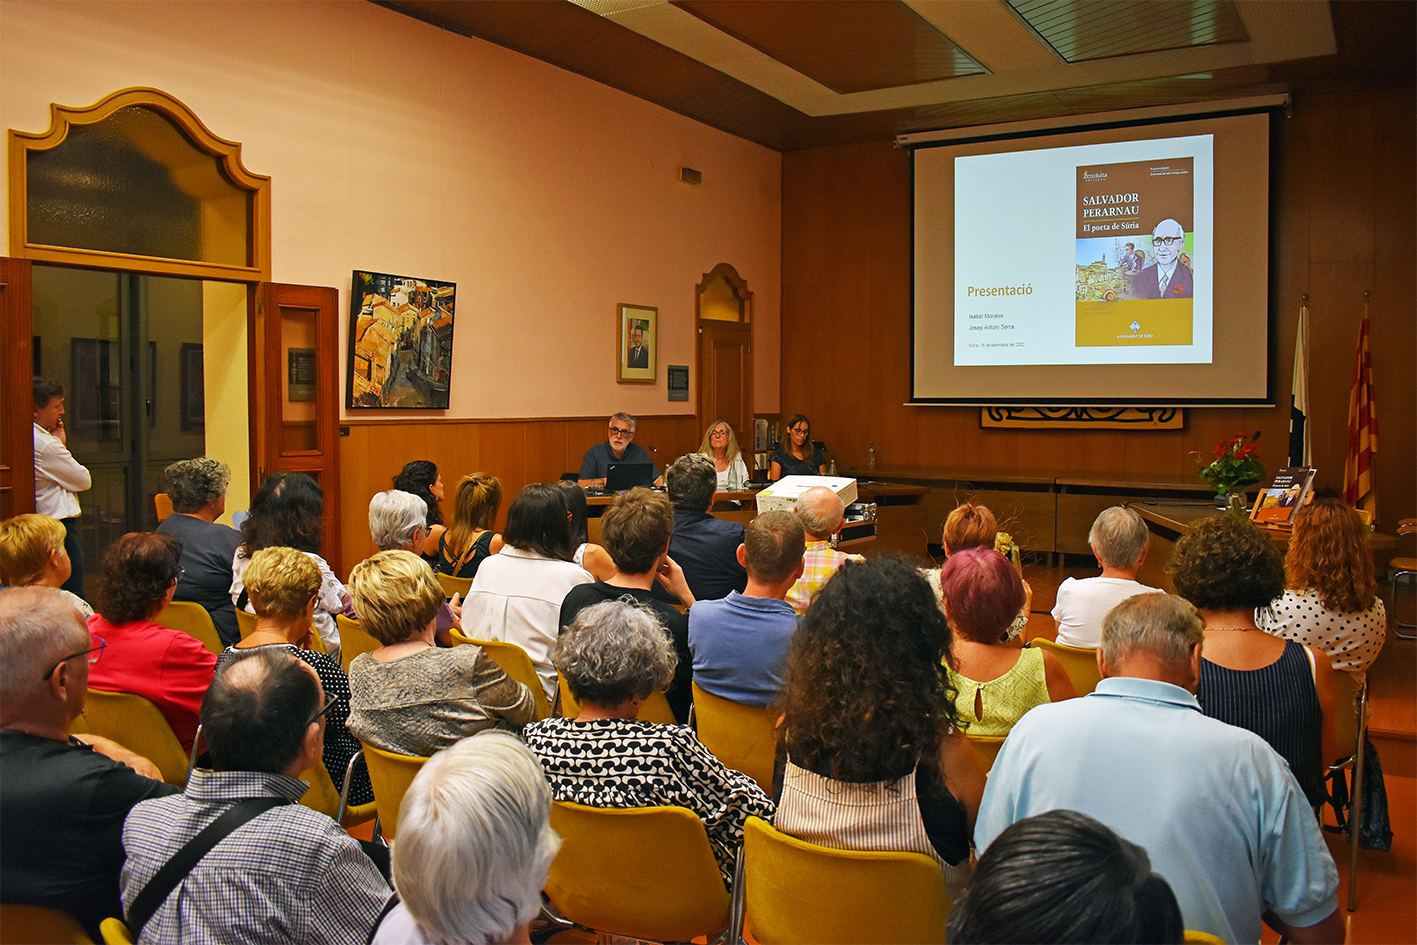 La presentació del dossier didàctic i l'audiovisual històric sobre Salvador Perarnau omple el saló de sessions de la Casa de la Vila 